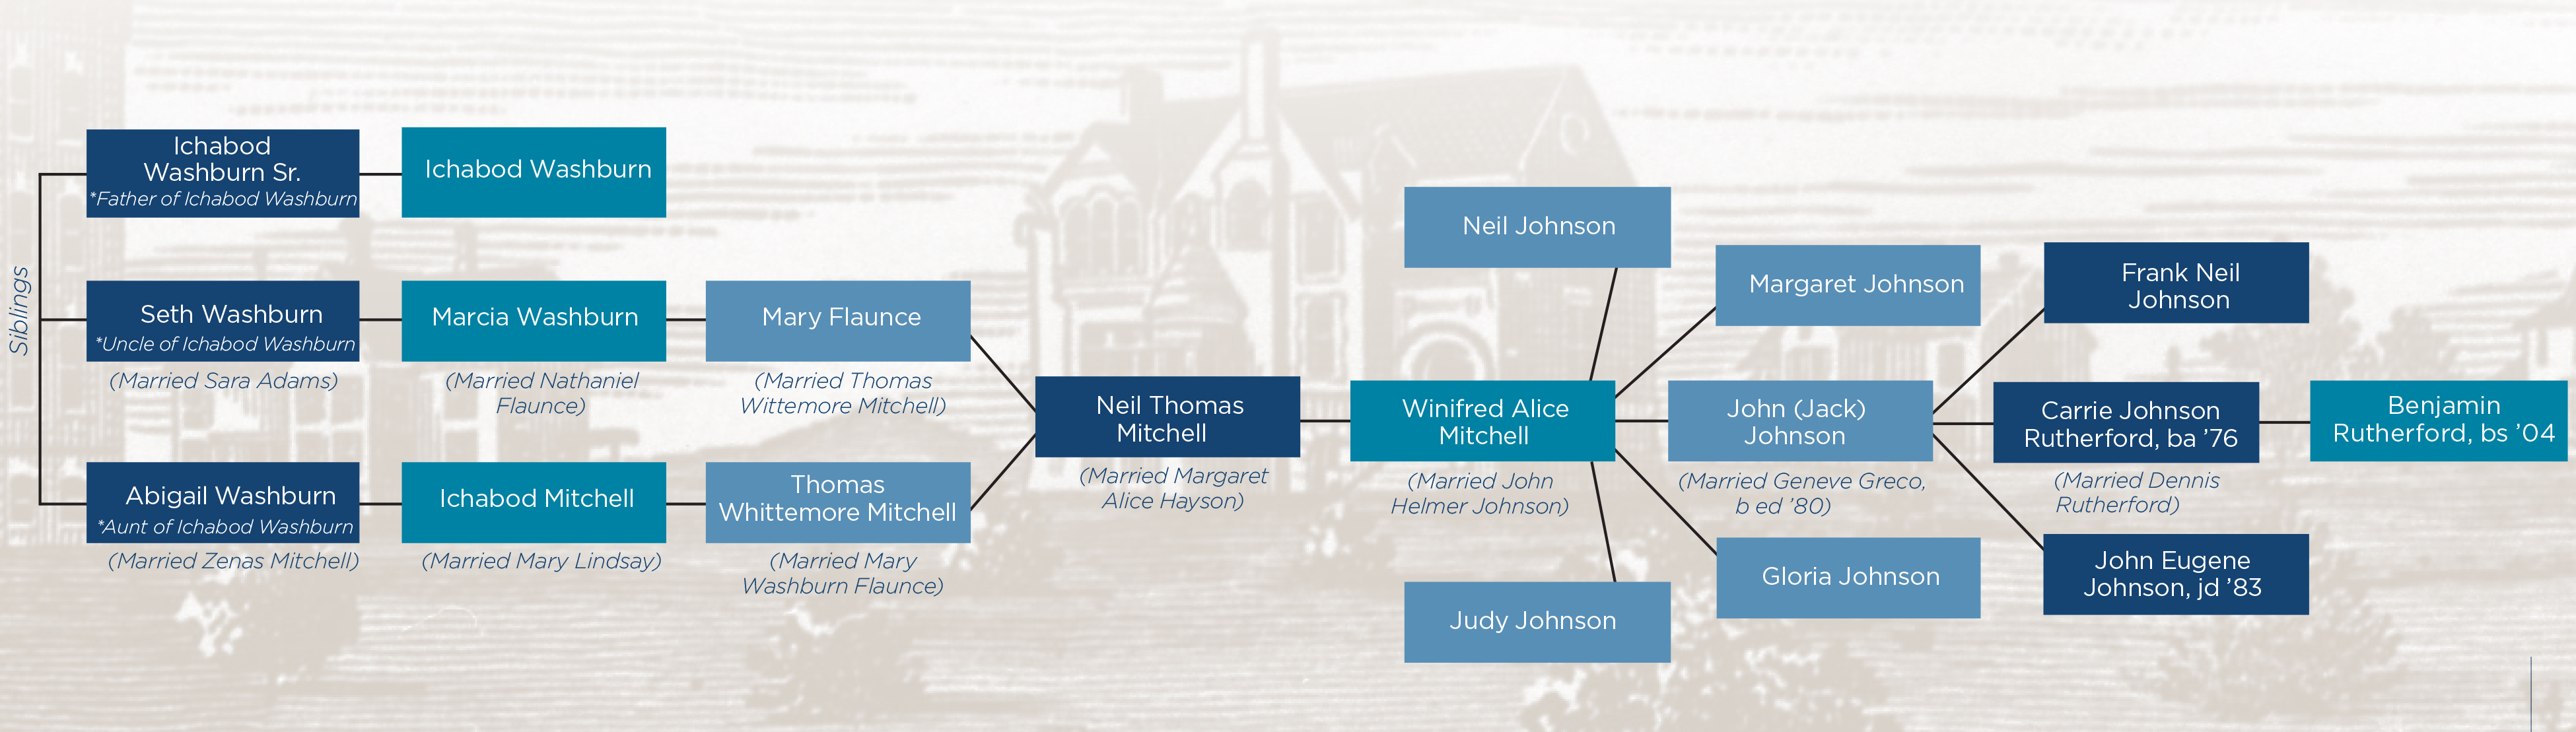 Large image of Ichabod family tree